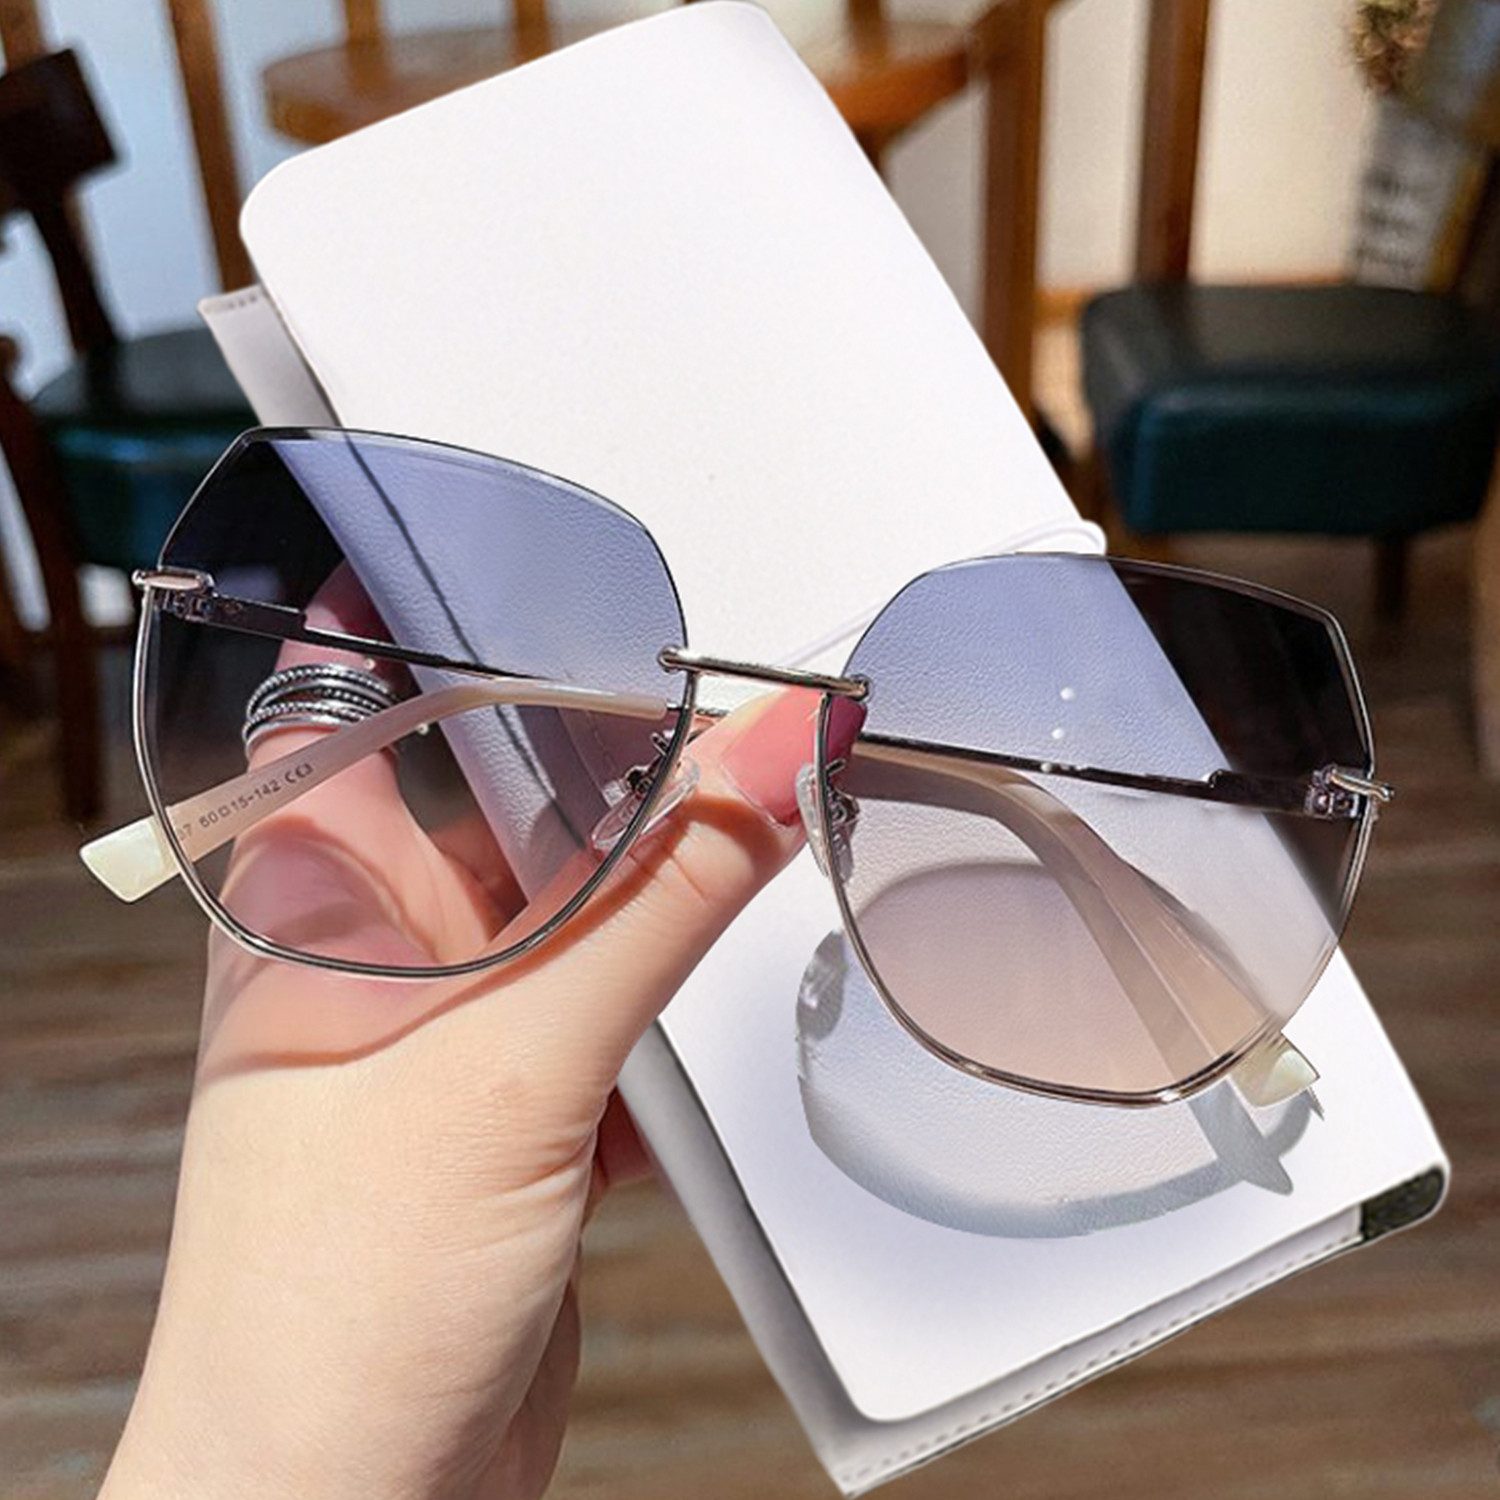 KUGI Sonnenbrille Sonnenbrille Hochwertige Verpackung Geeignet für Männer und Frauen (für Männer und Frauen Ins Blogger,und Prominenten derselbe Stil Muss in vier Jahreszeiten haben sind die perfekte Wahl, UV400 100 % UV-Schutz,2023 Hot Sale Style Auswahl) für Outdoor-Aktivitäten wie Wandern,Fahren,Angeln,Einkaufen